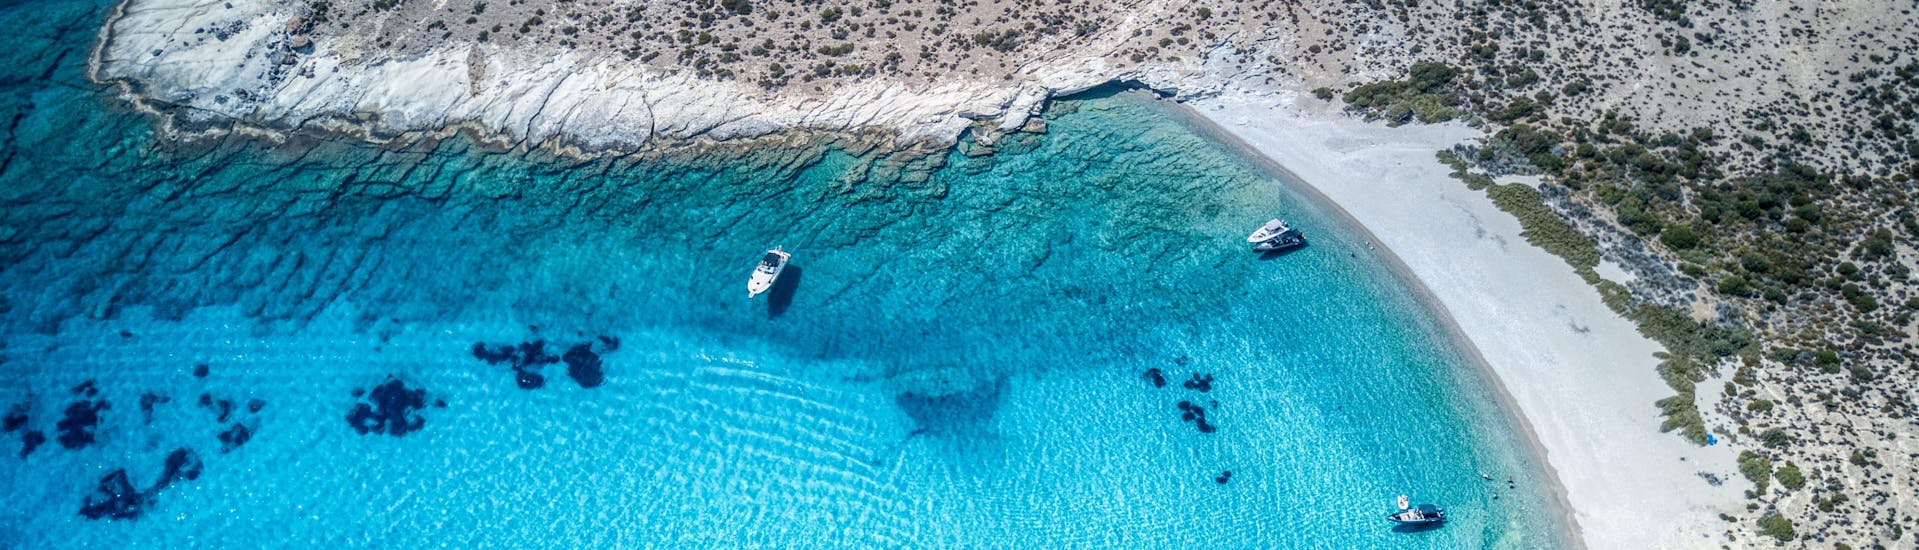 Vista sull'isola di Polyaigos, una destinazione che si può visitare durante una gita in barca in Grecia.